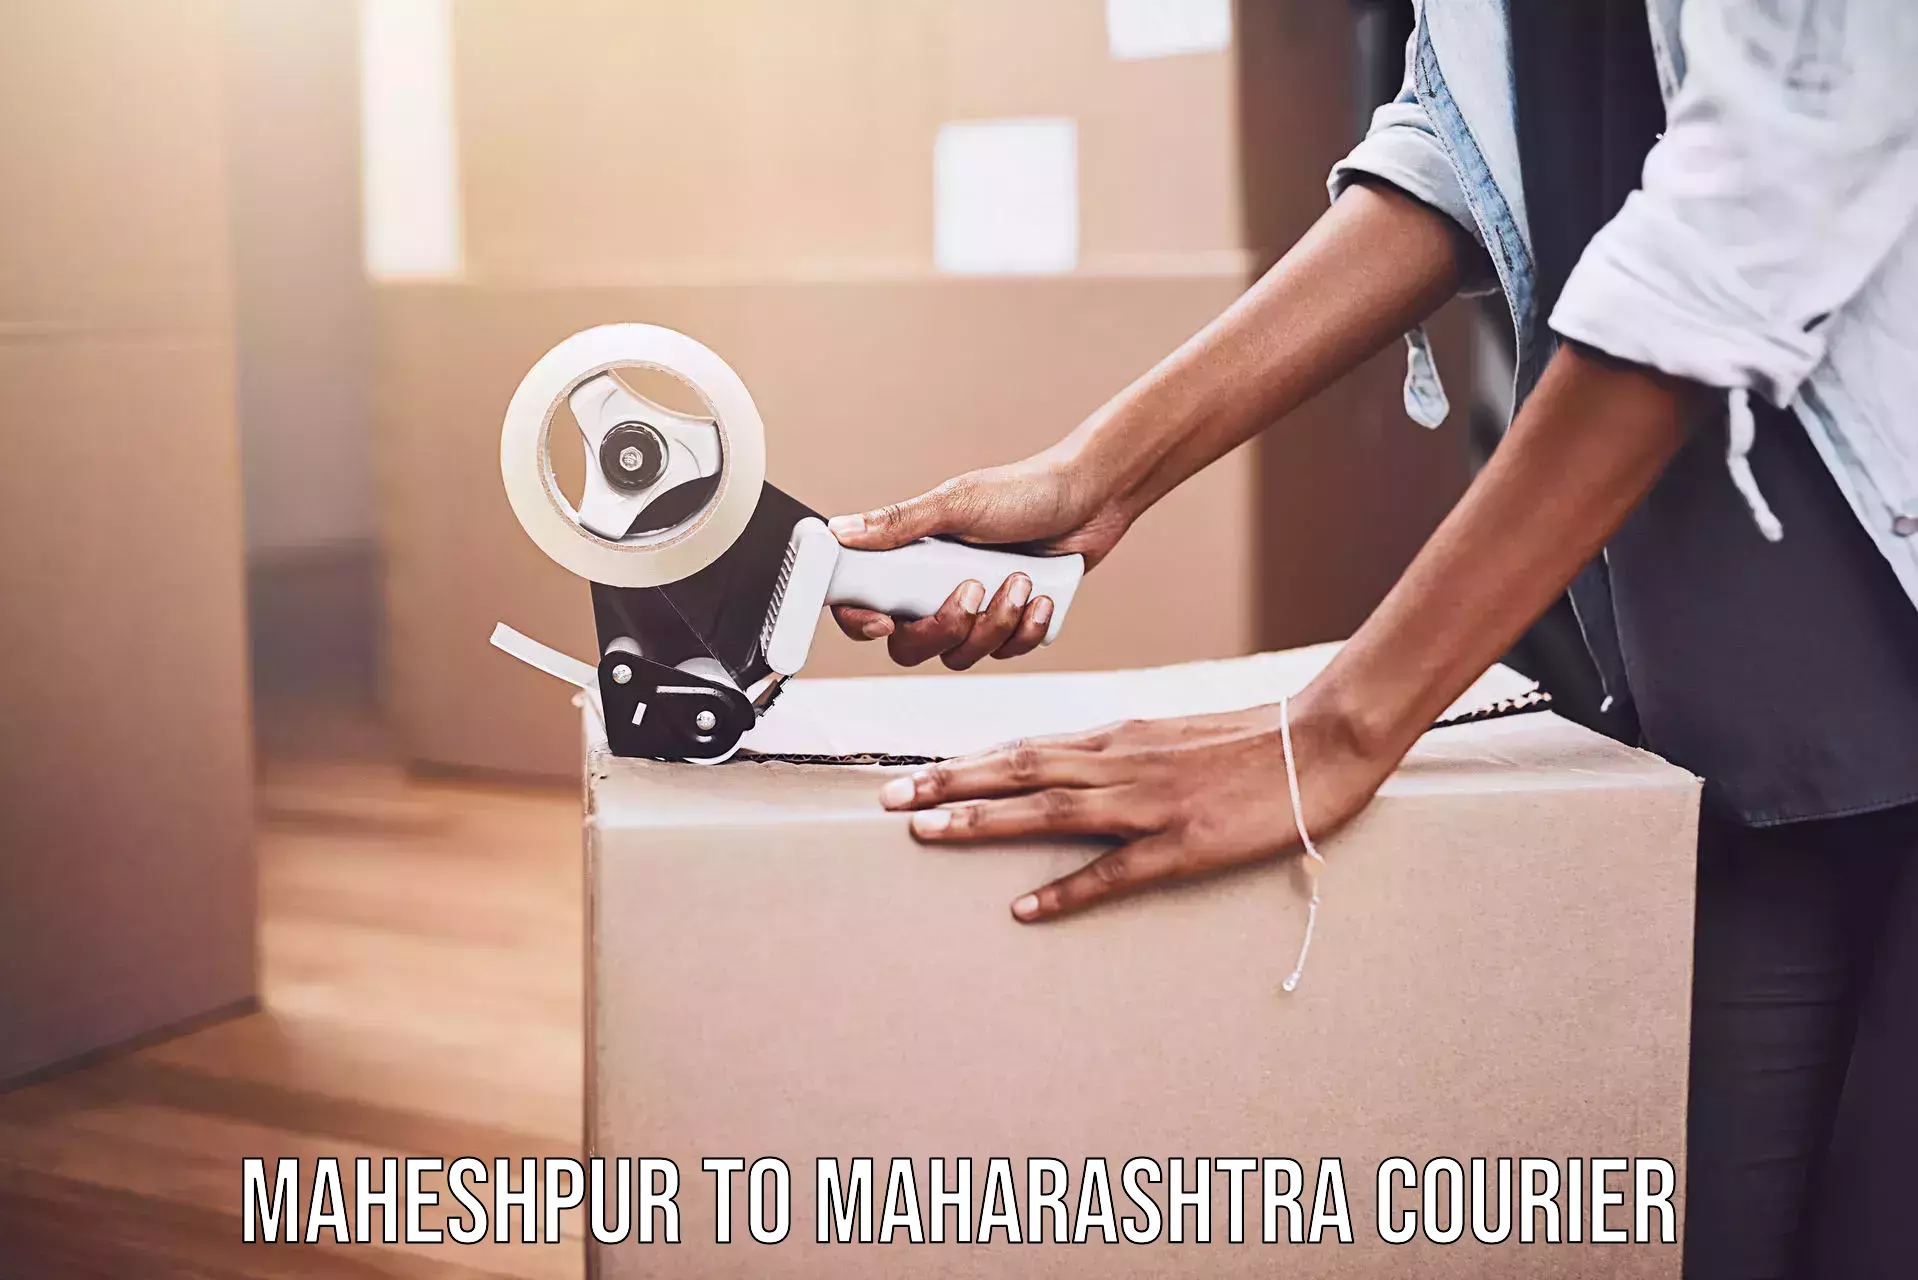 Expedited shipping methods Maheshpur to Gadchiroli